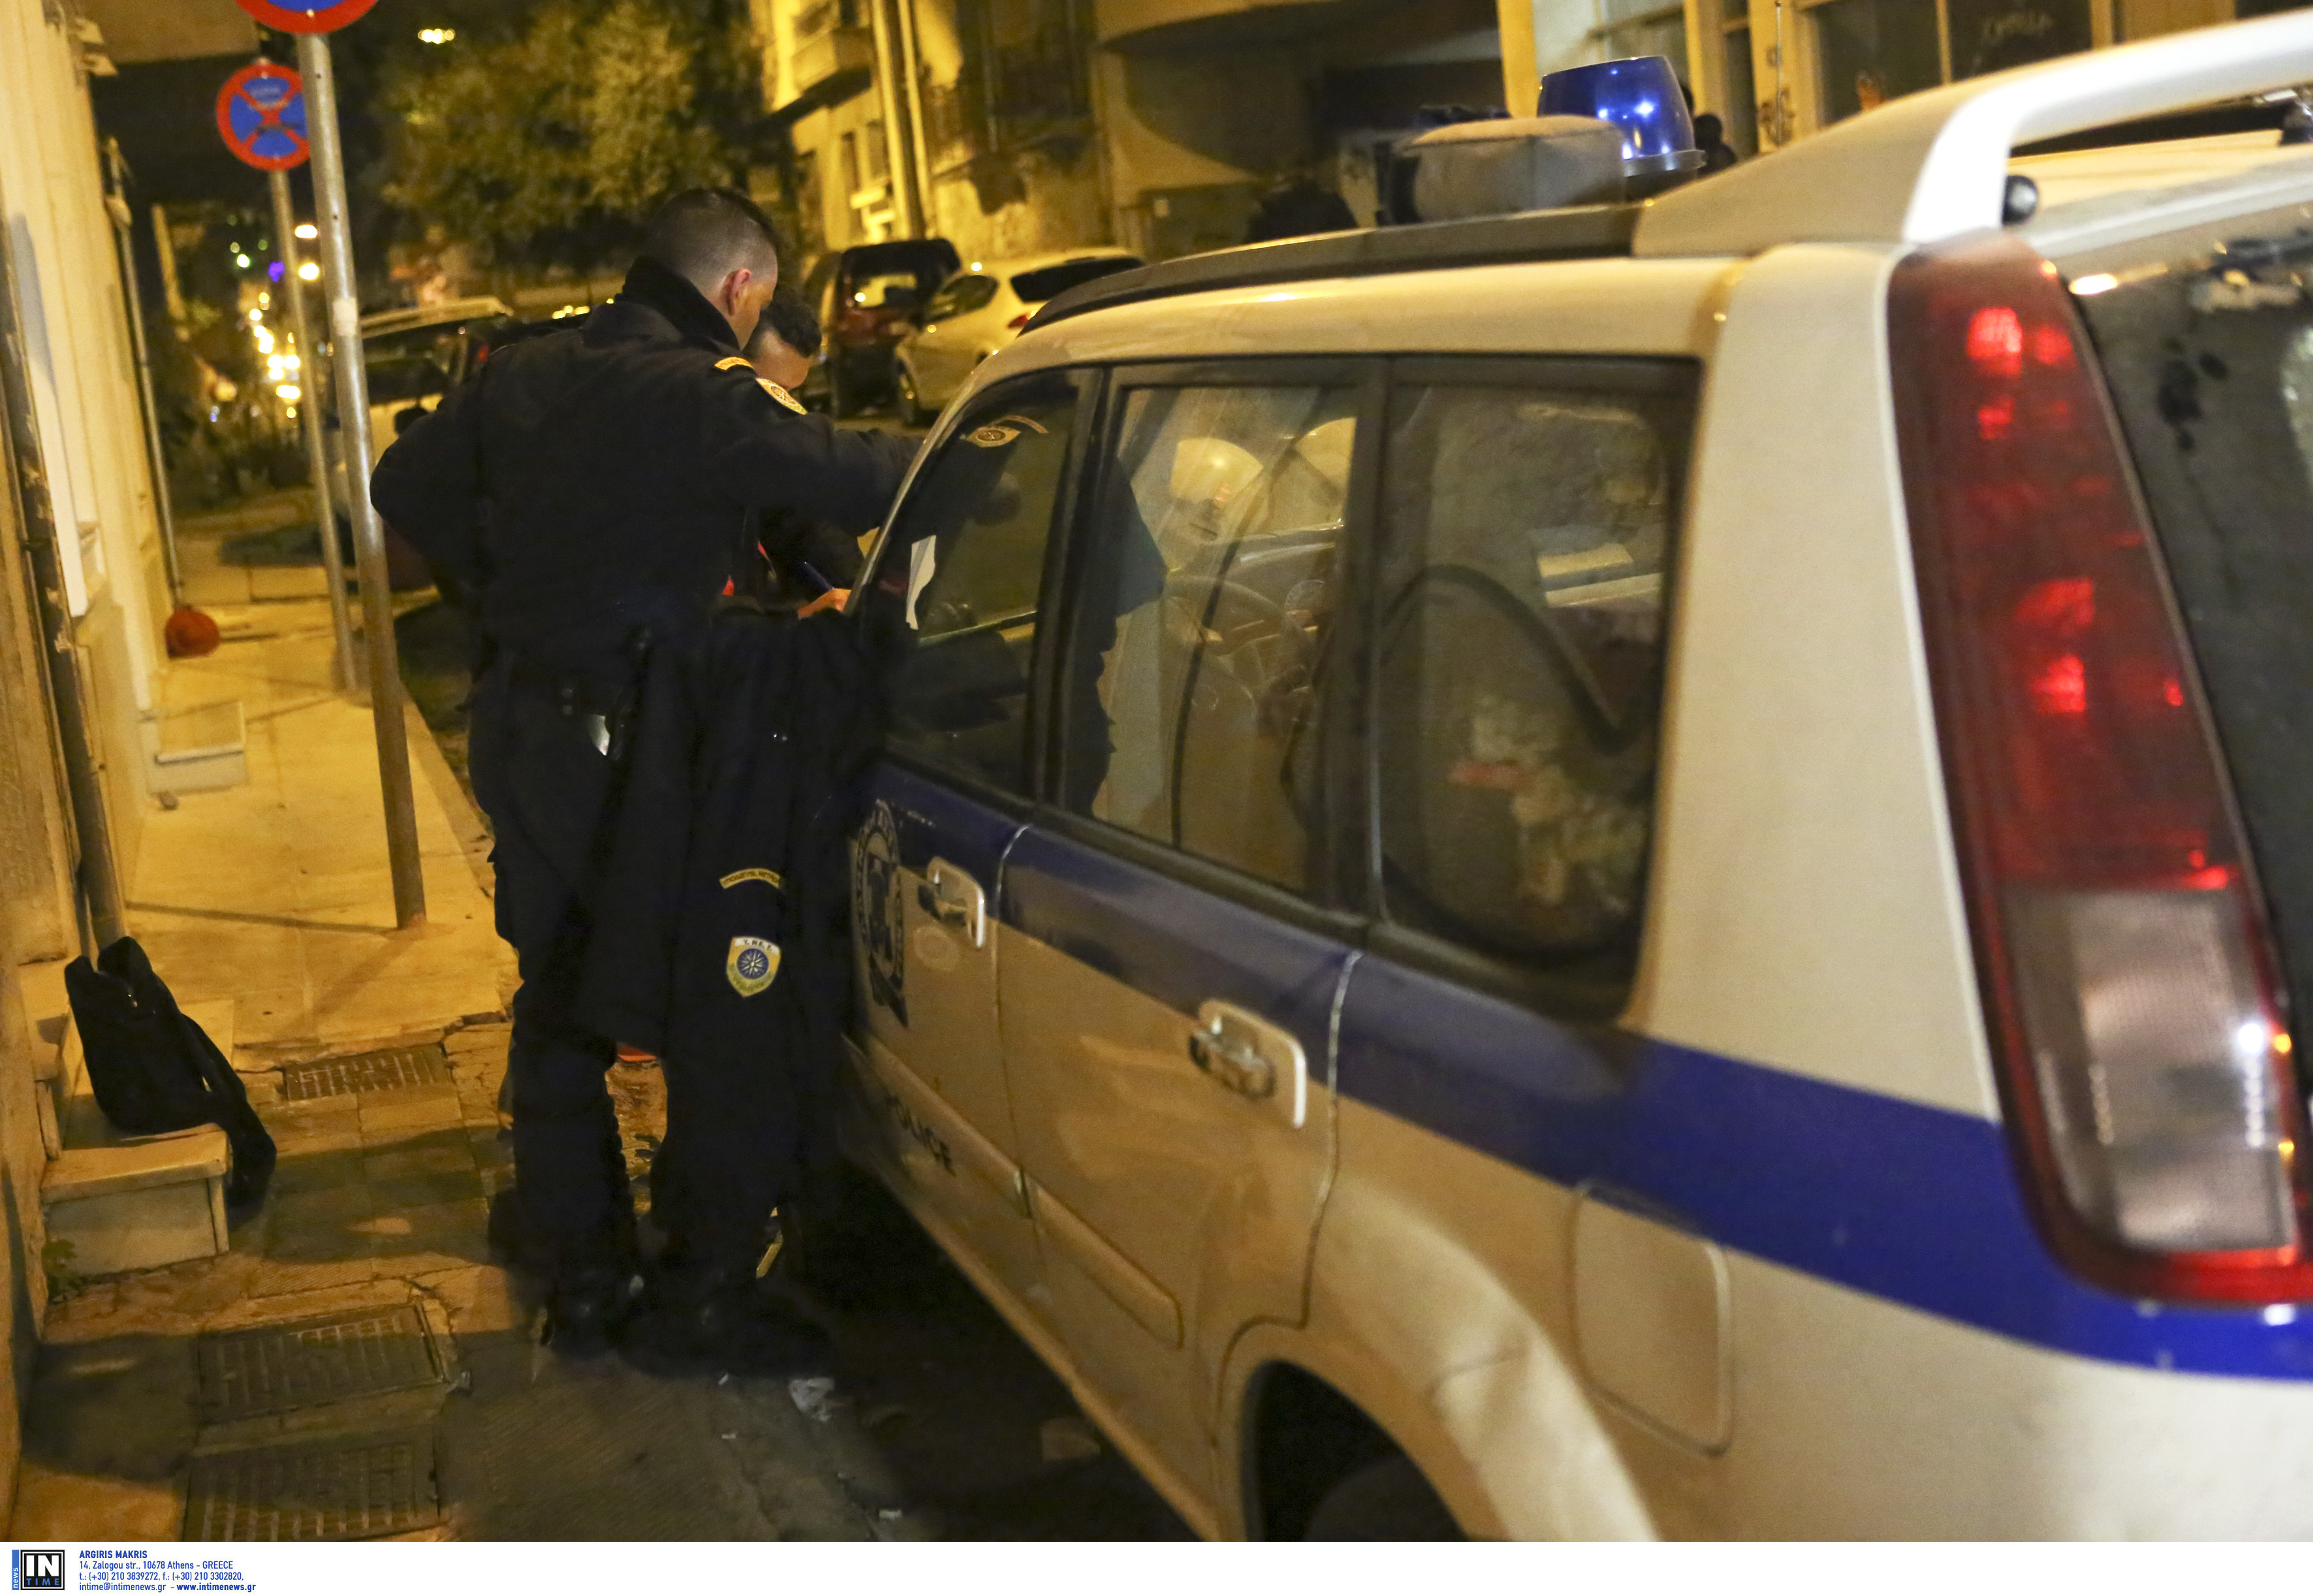 Θεσσαλονίκη: Πάλεψαν για ένα κινητό τηλέφωνο – Έβγαλε μαχαίρι αλλά οι περαστικοί δεν έμειναν απαθείς!